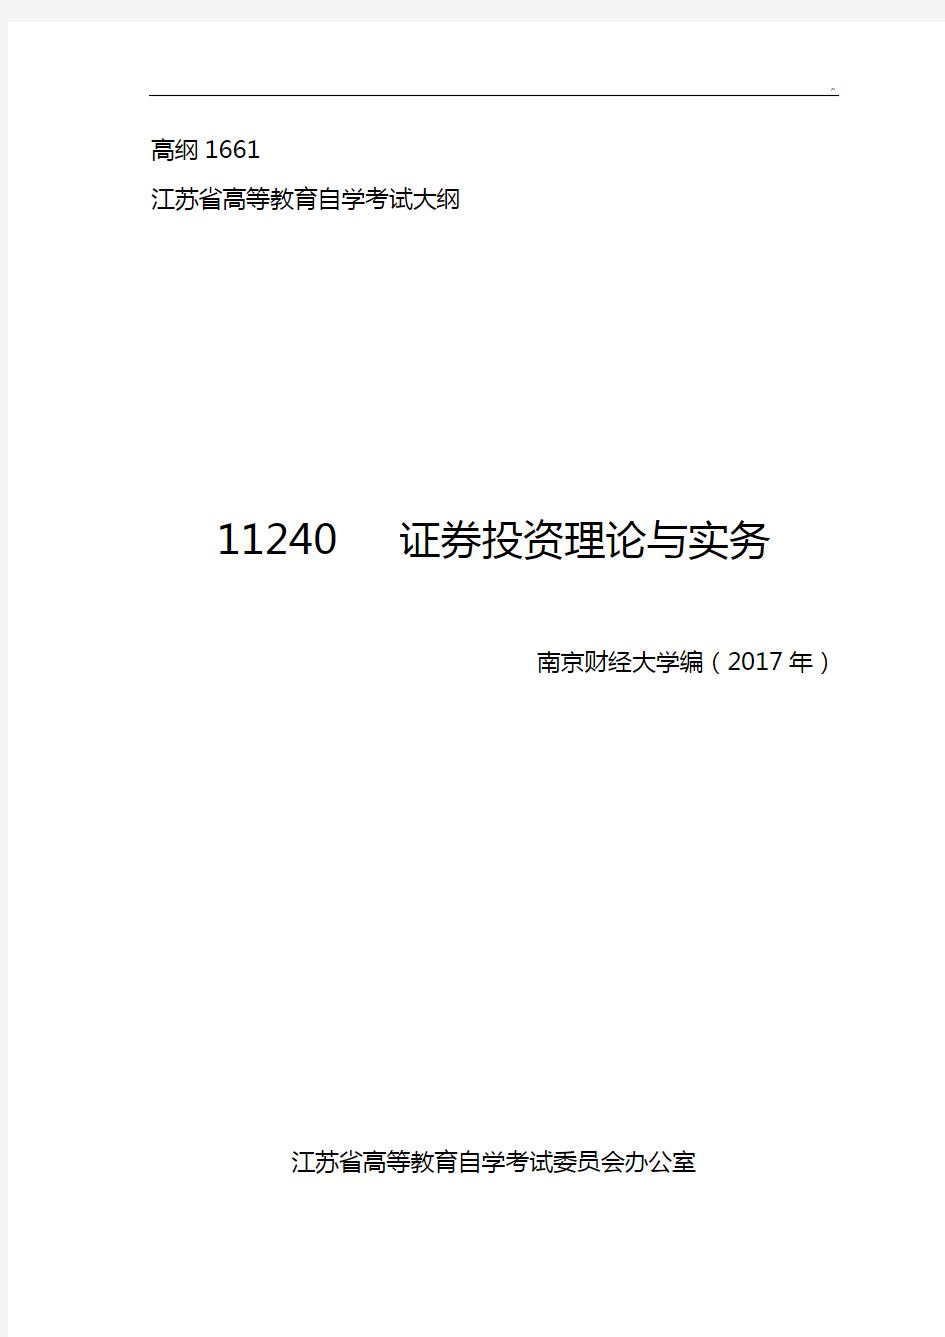 江苏自学考试11240证券投资理论与实务